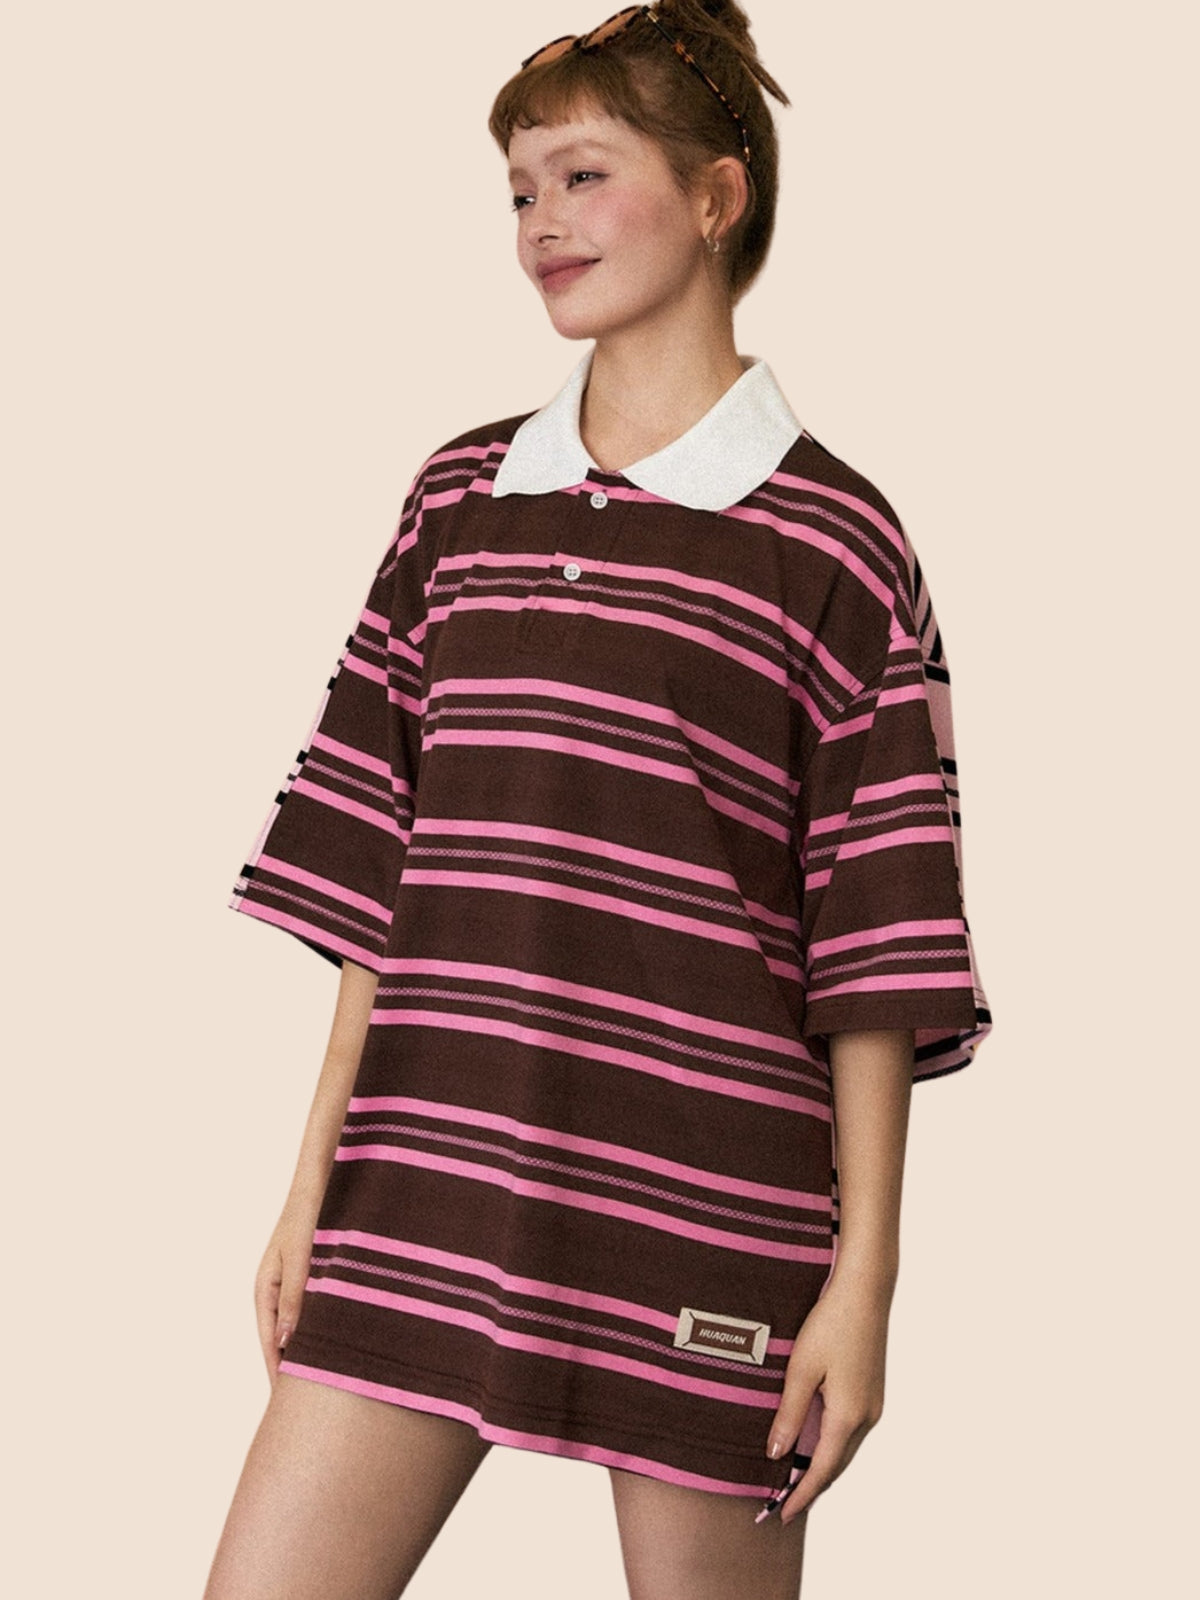 Retro Striped Contrast Polo Shirt